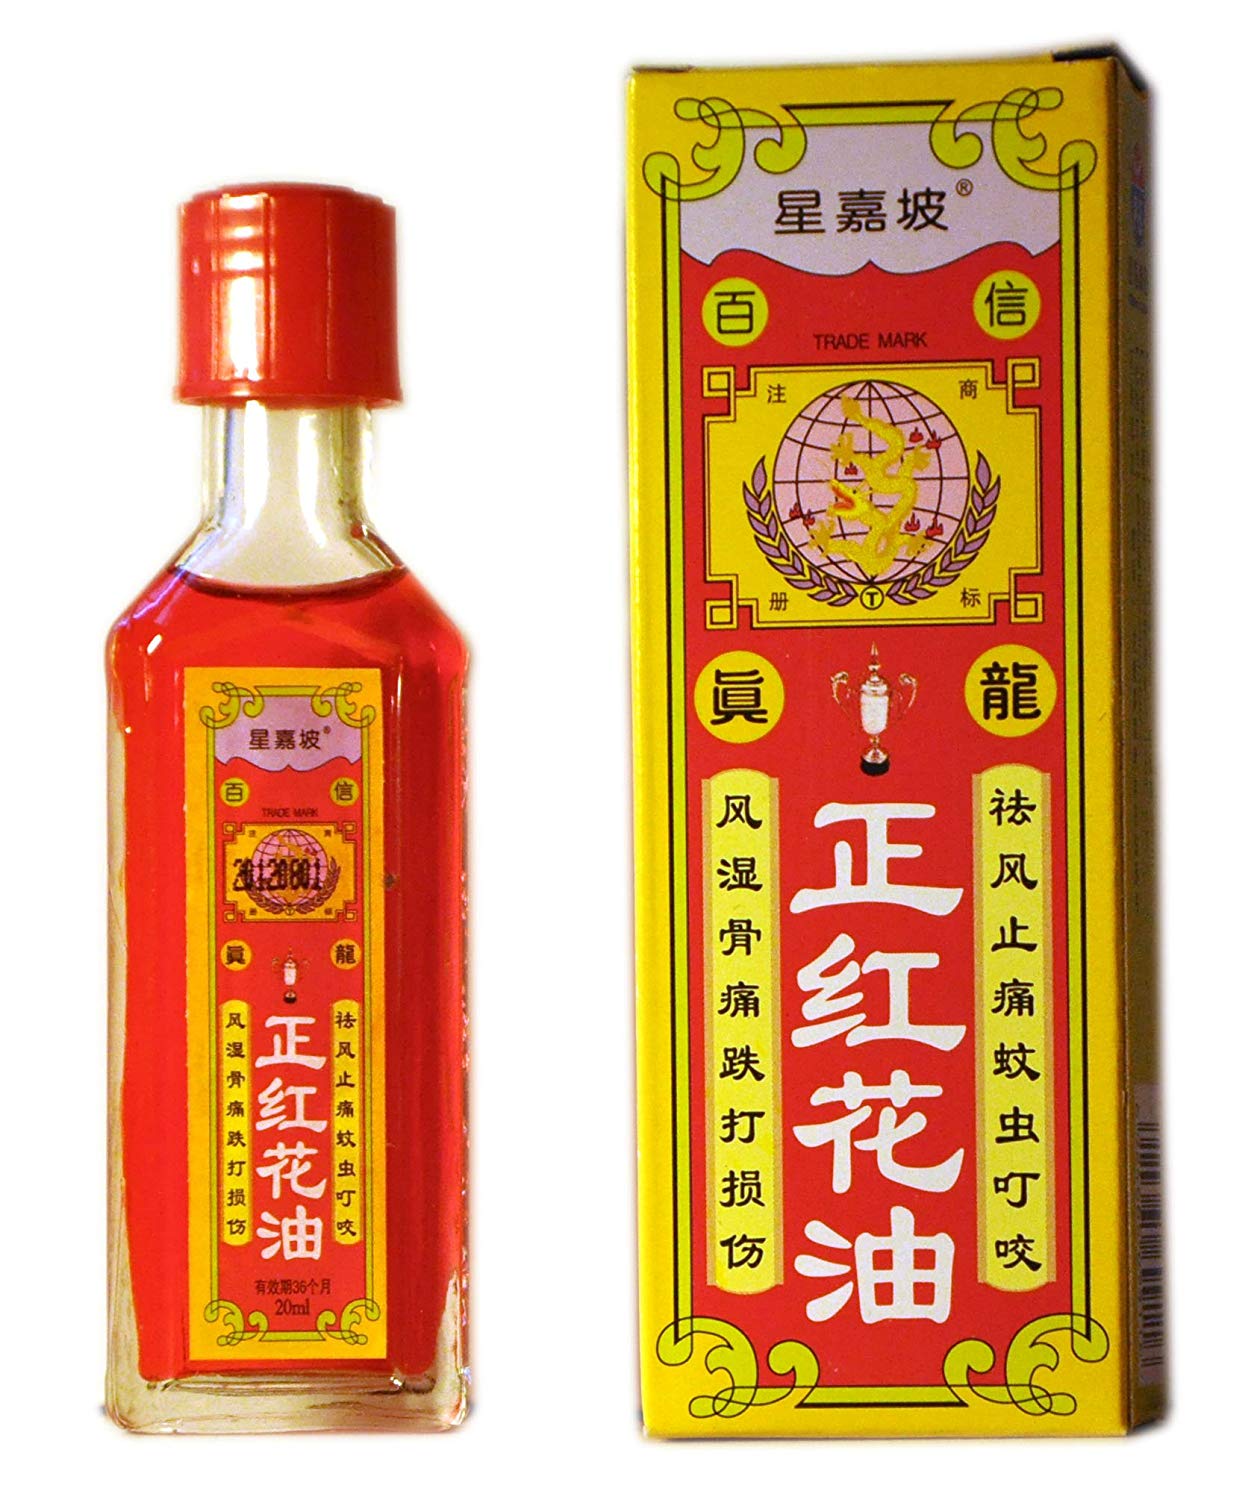 Red Flower Oil - Zheng Hong Hua You